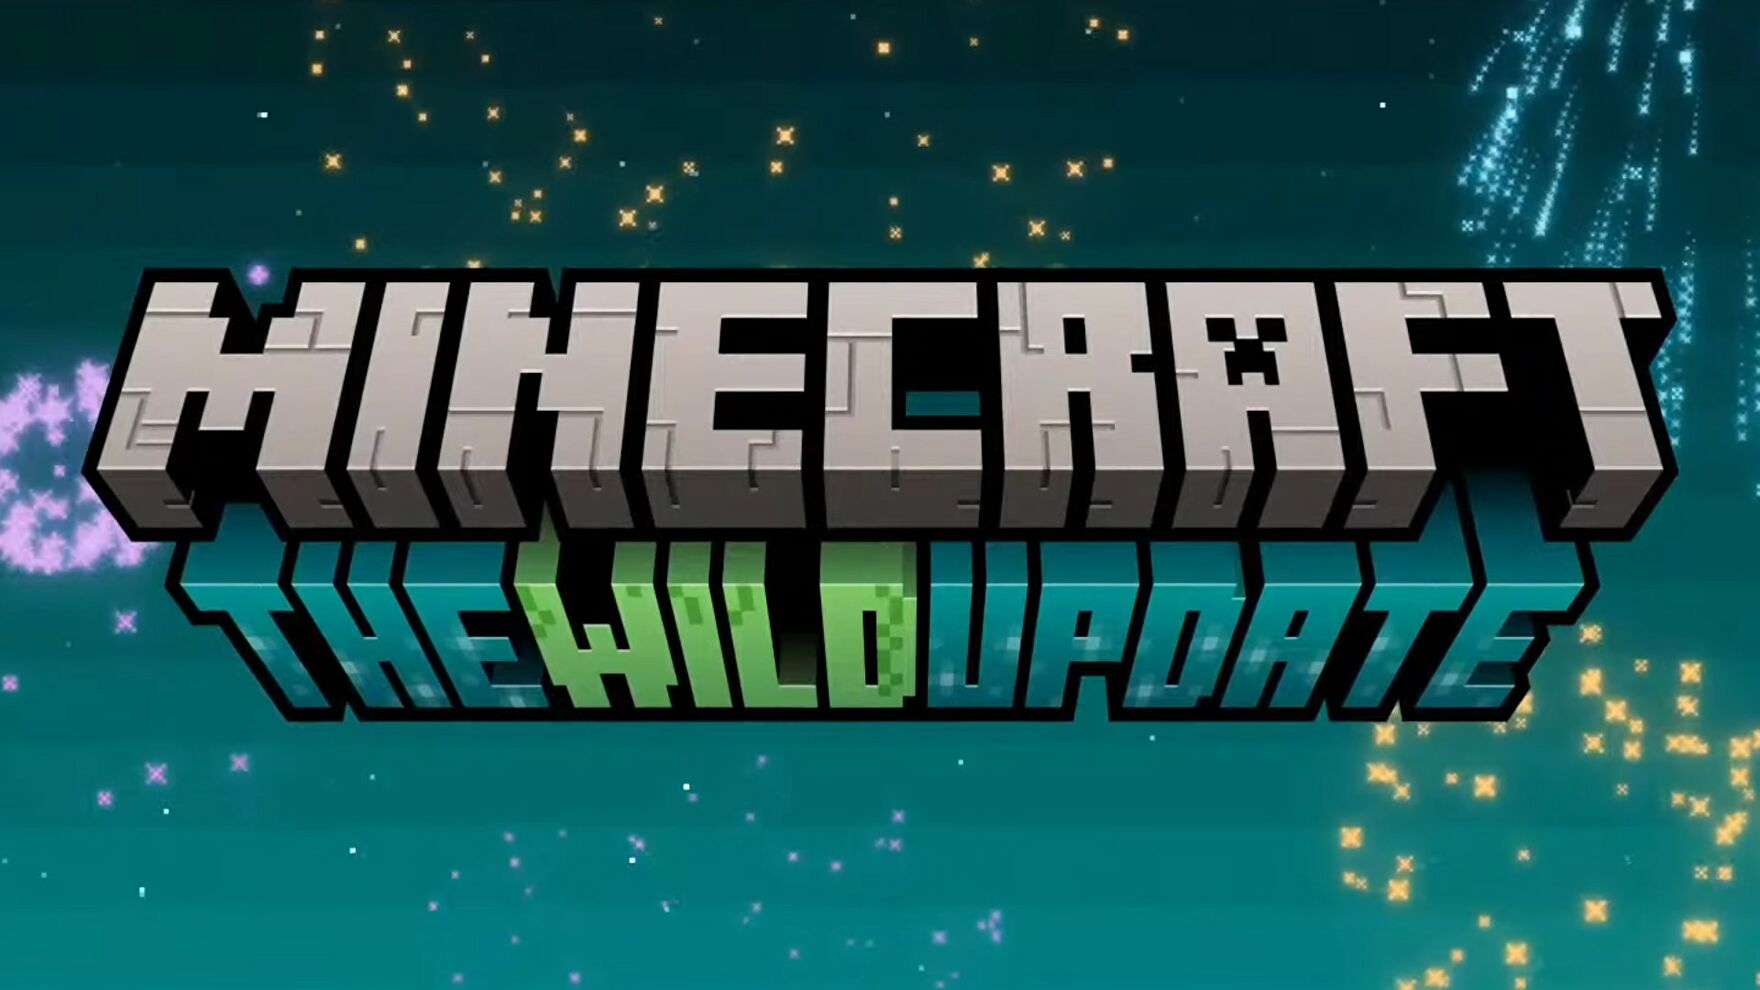 Патч 1.19 для Minecraft: что появилось в обновлении The Wild Update?